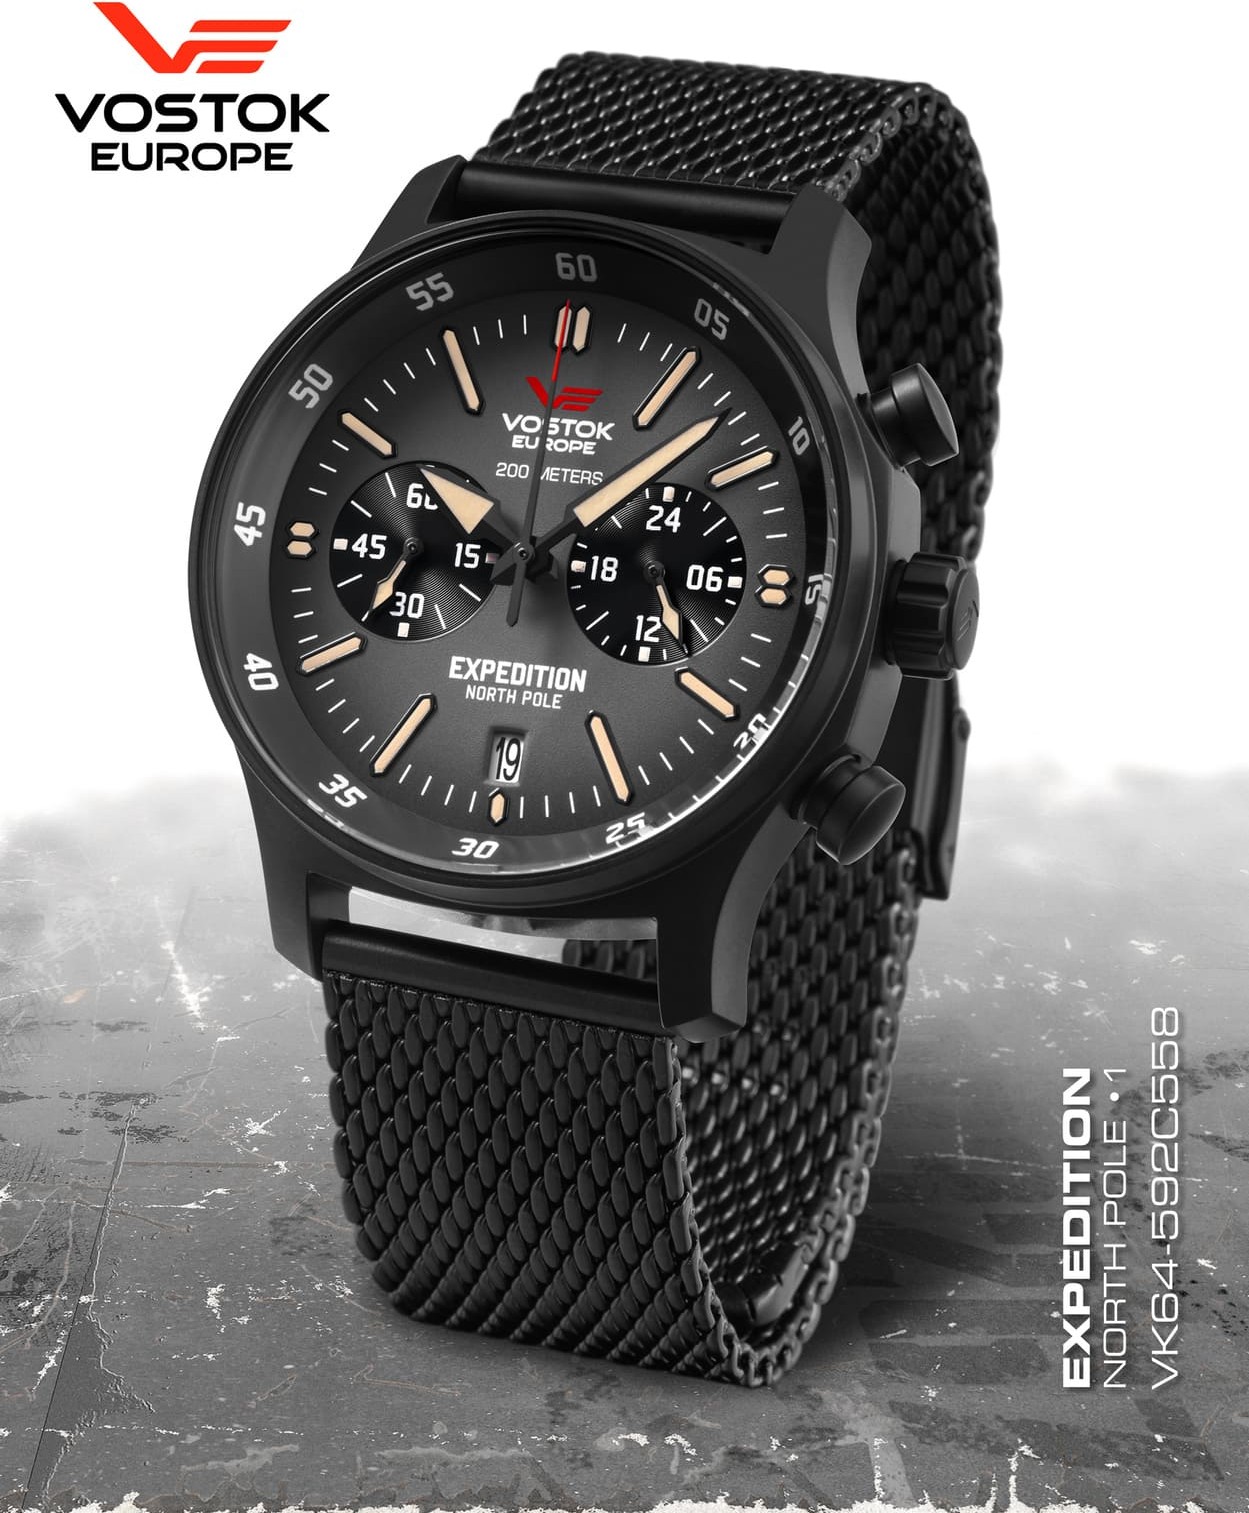  Vostok Europe Expedition Nordpol 1 Chronograph black 